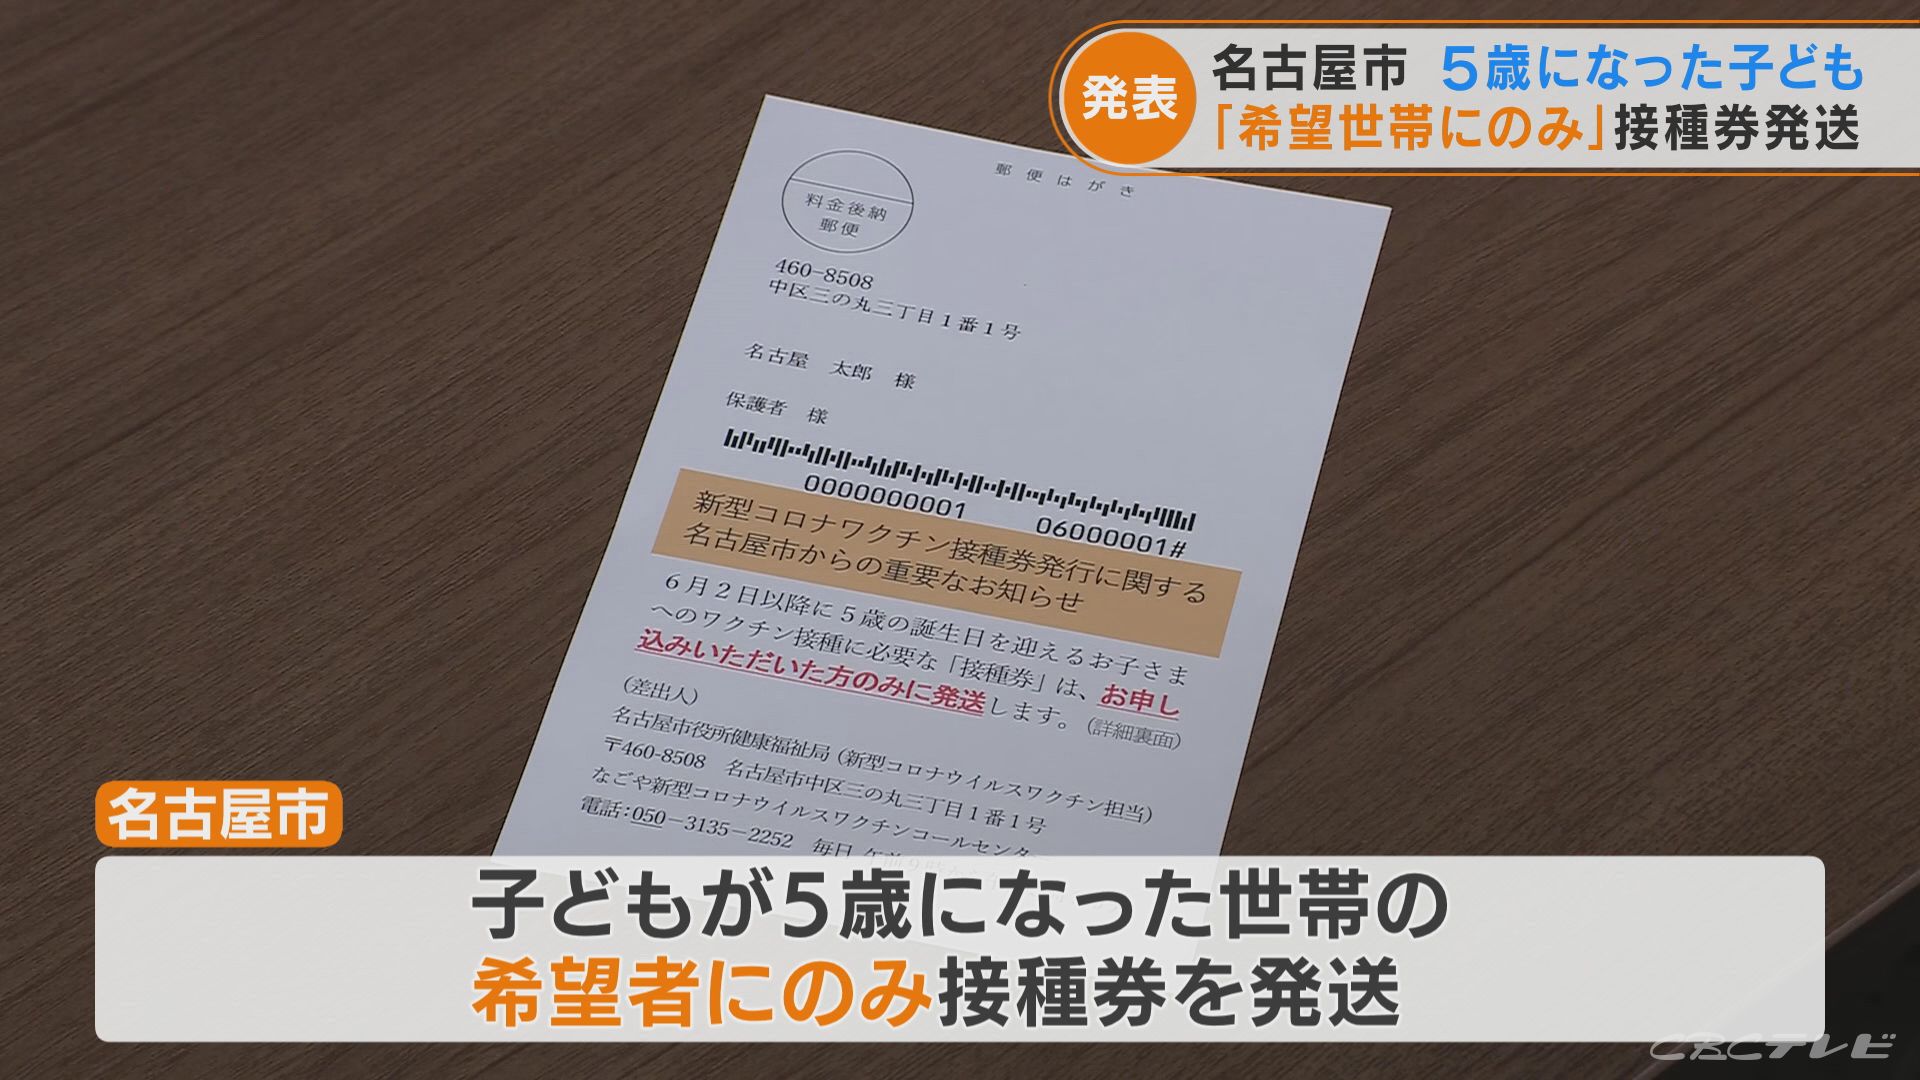 名古屋市 子どもが5歳になった世帯「希望者にのみ」接種券発送　「希望していないのに接種券が届いた」の声受け